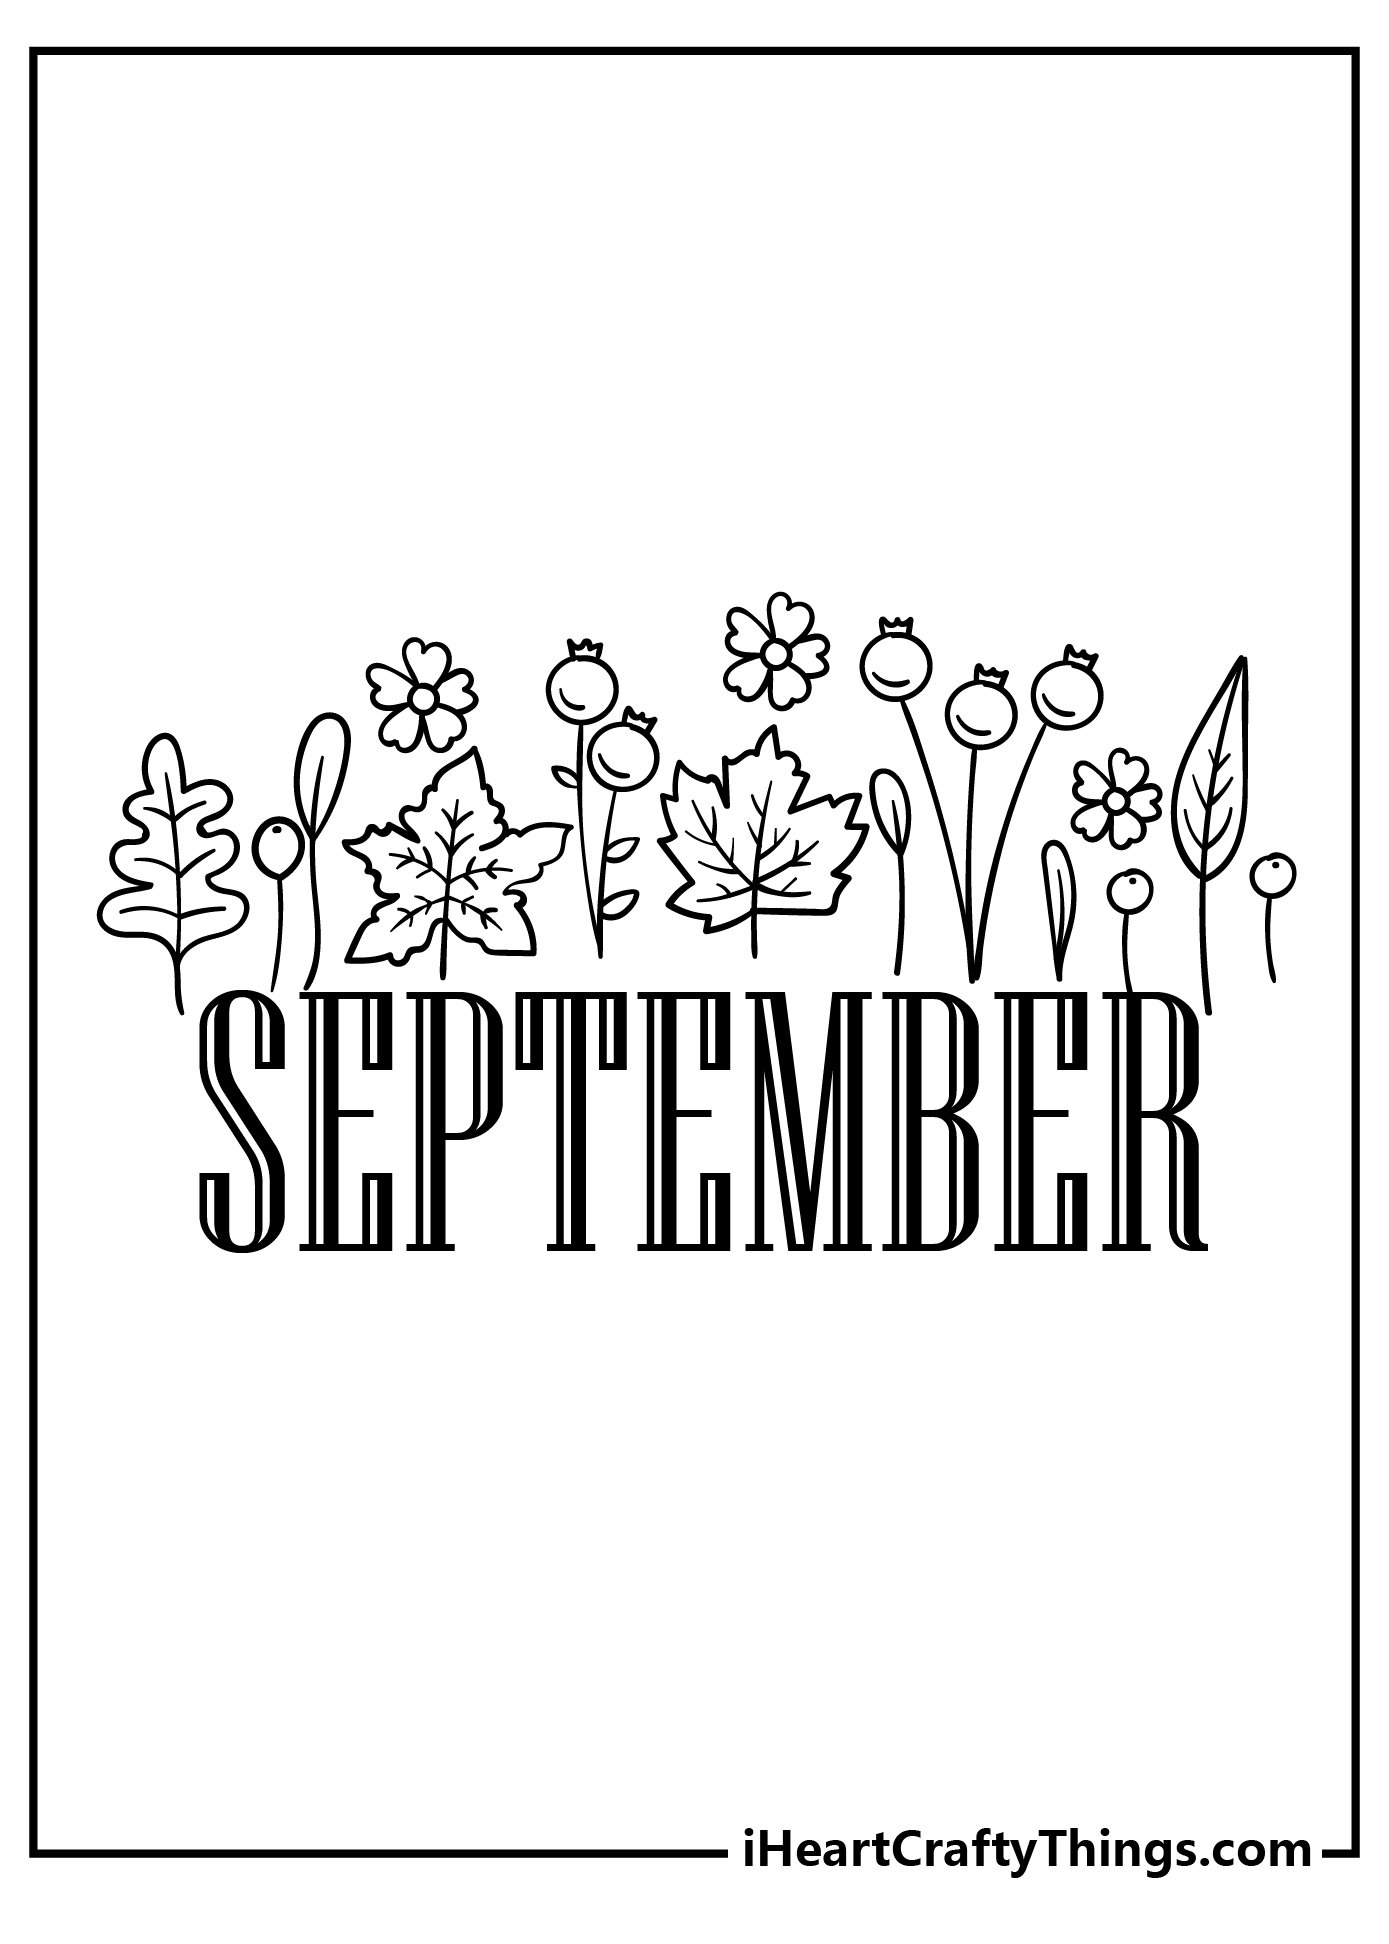 September Coloring Original Sheet for children free download